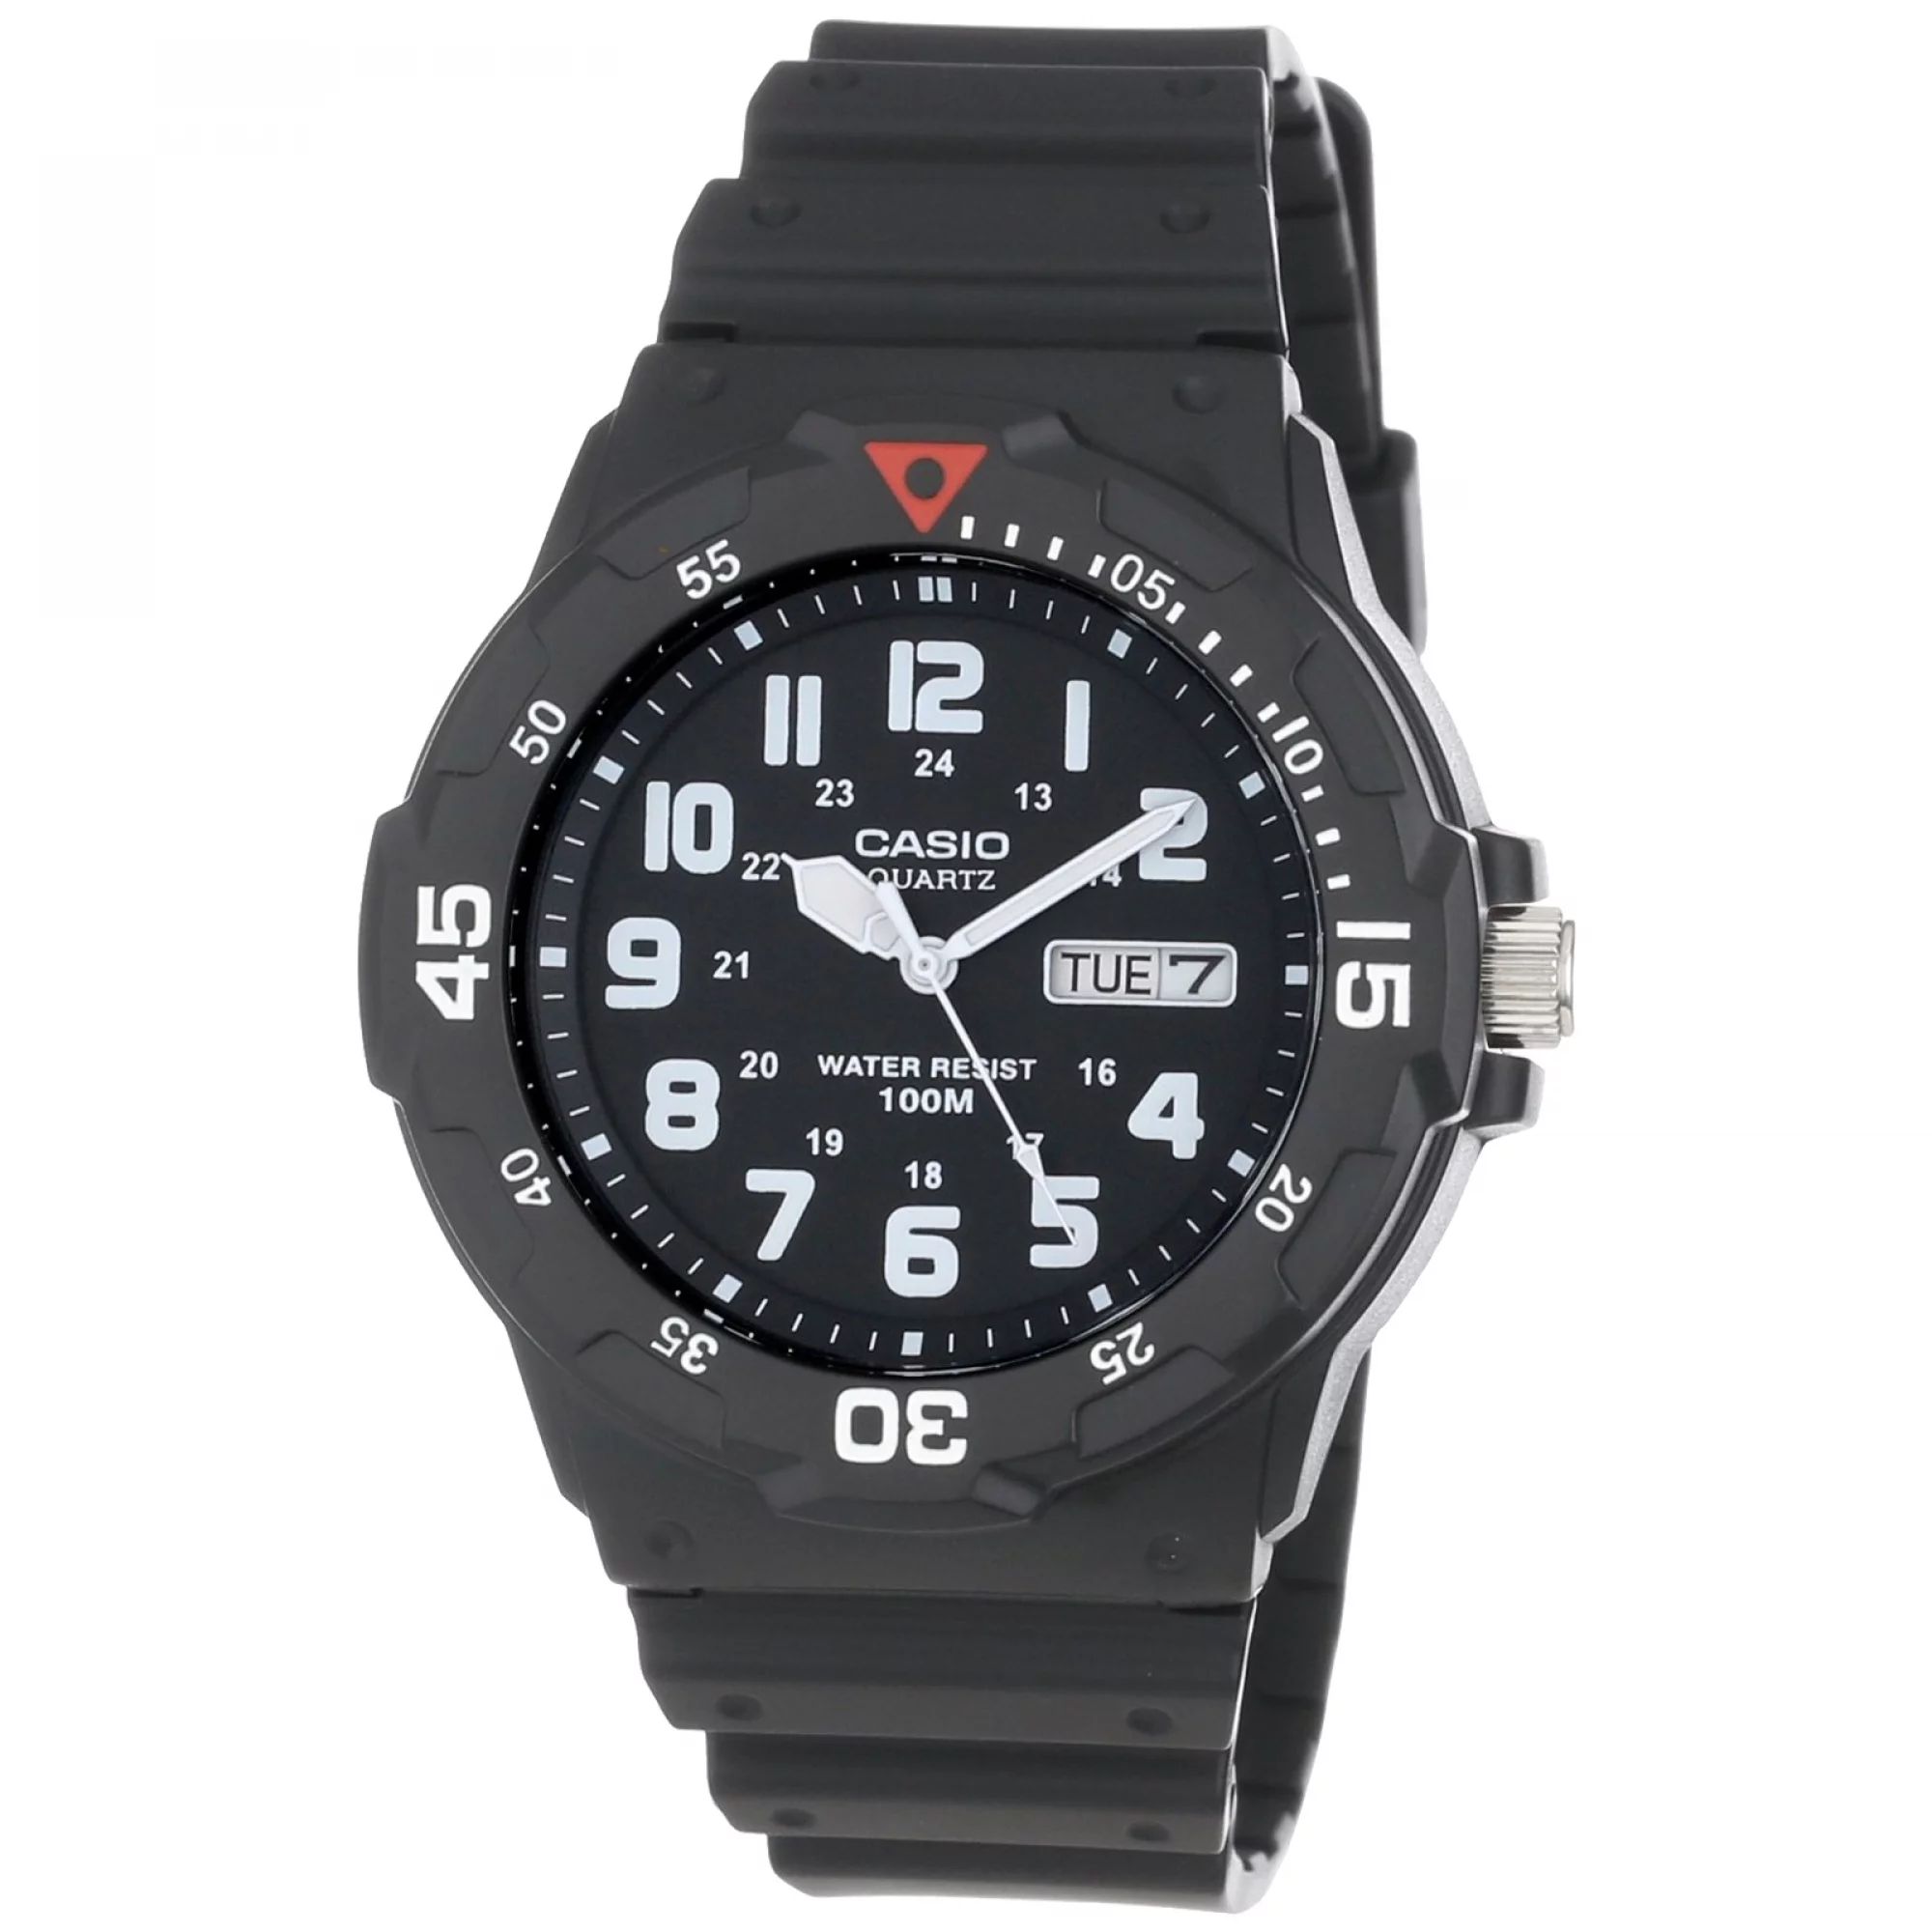 Casio Men's Dive Style Watch, Black MRW200H-1BV | Walmart (US)